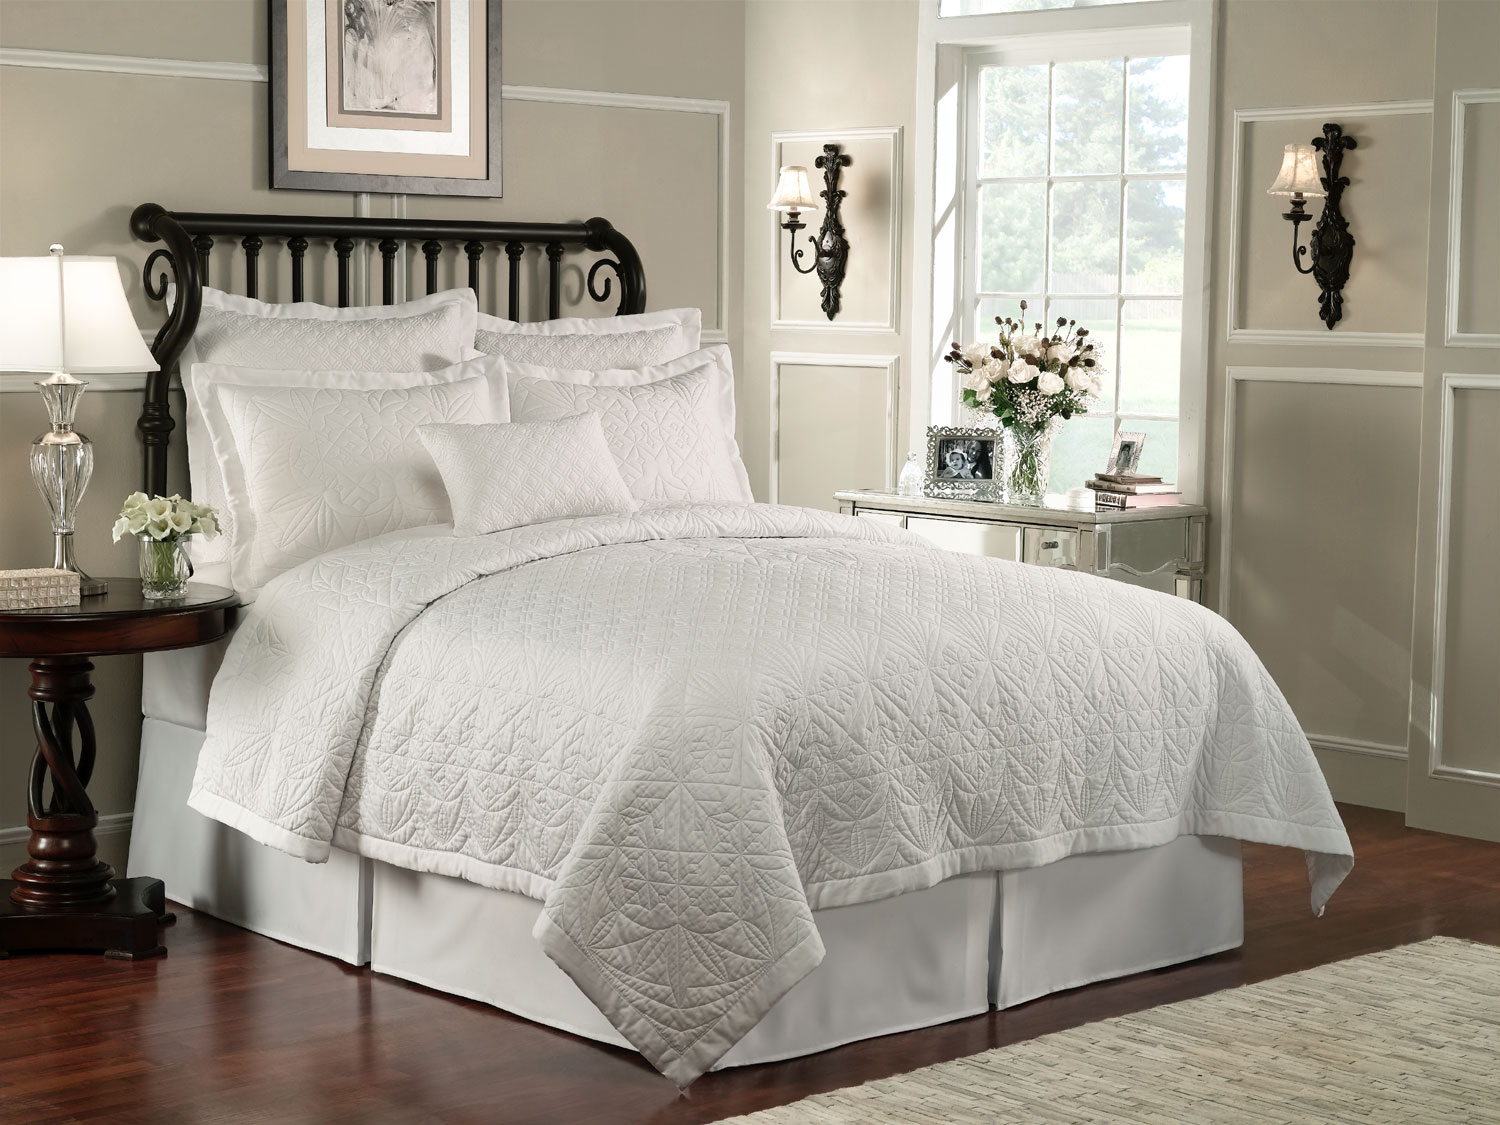 Bedroom Decor Quilt Bedspread